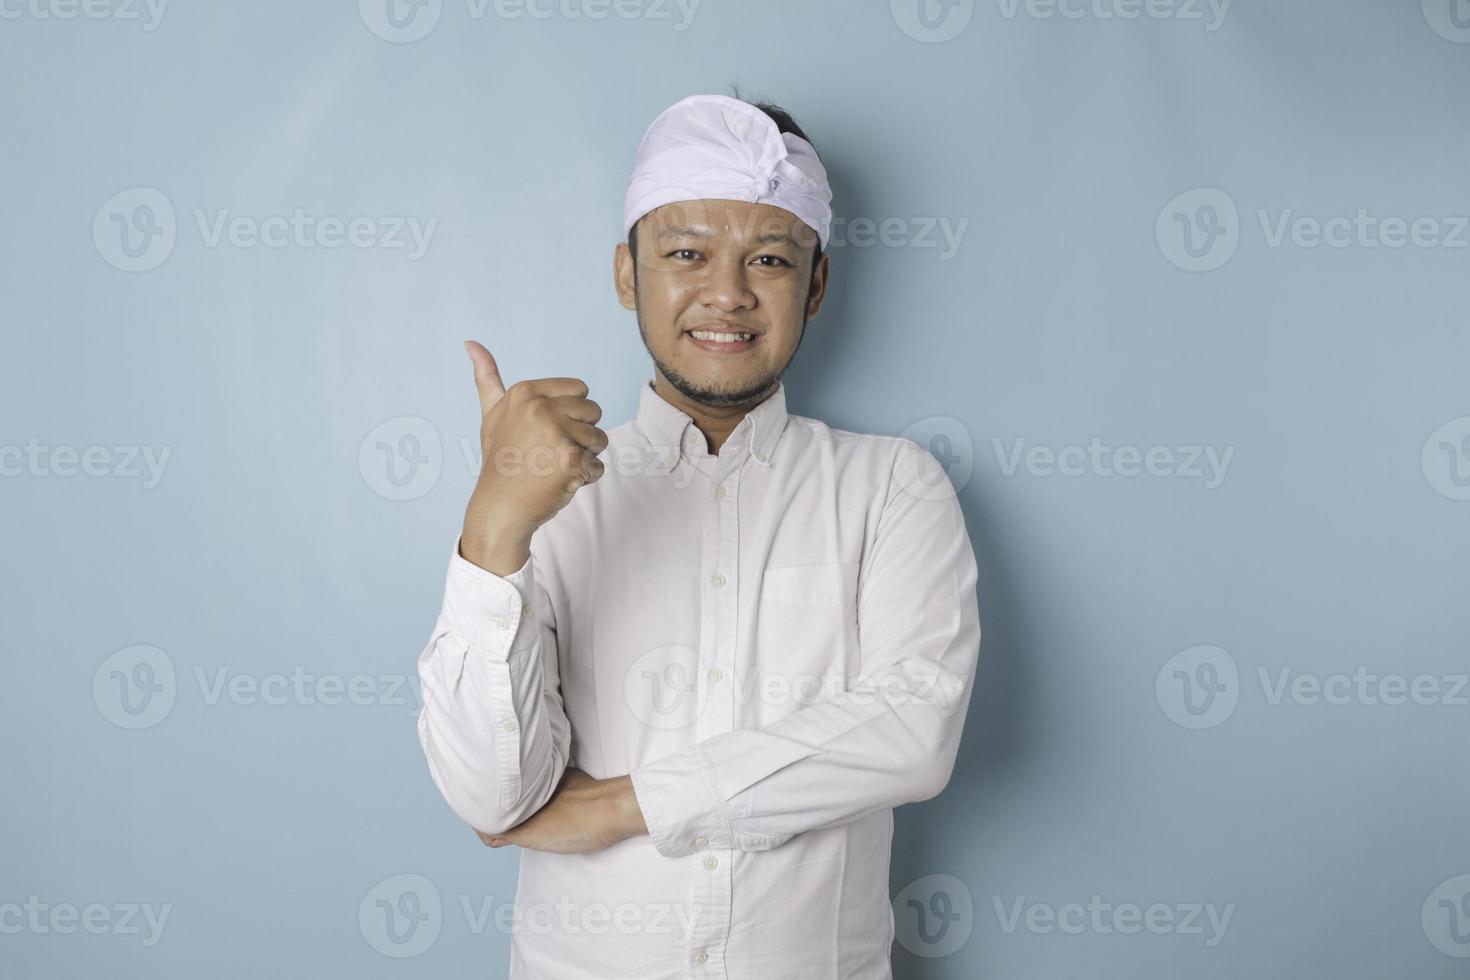 animado homem balinês vestindo udeng ou headband tradicional e camisa branca dá polegares para cima gesto de aprovação, isolado por fundo azul foto